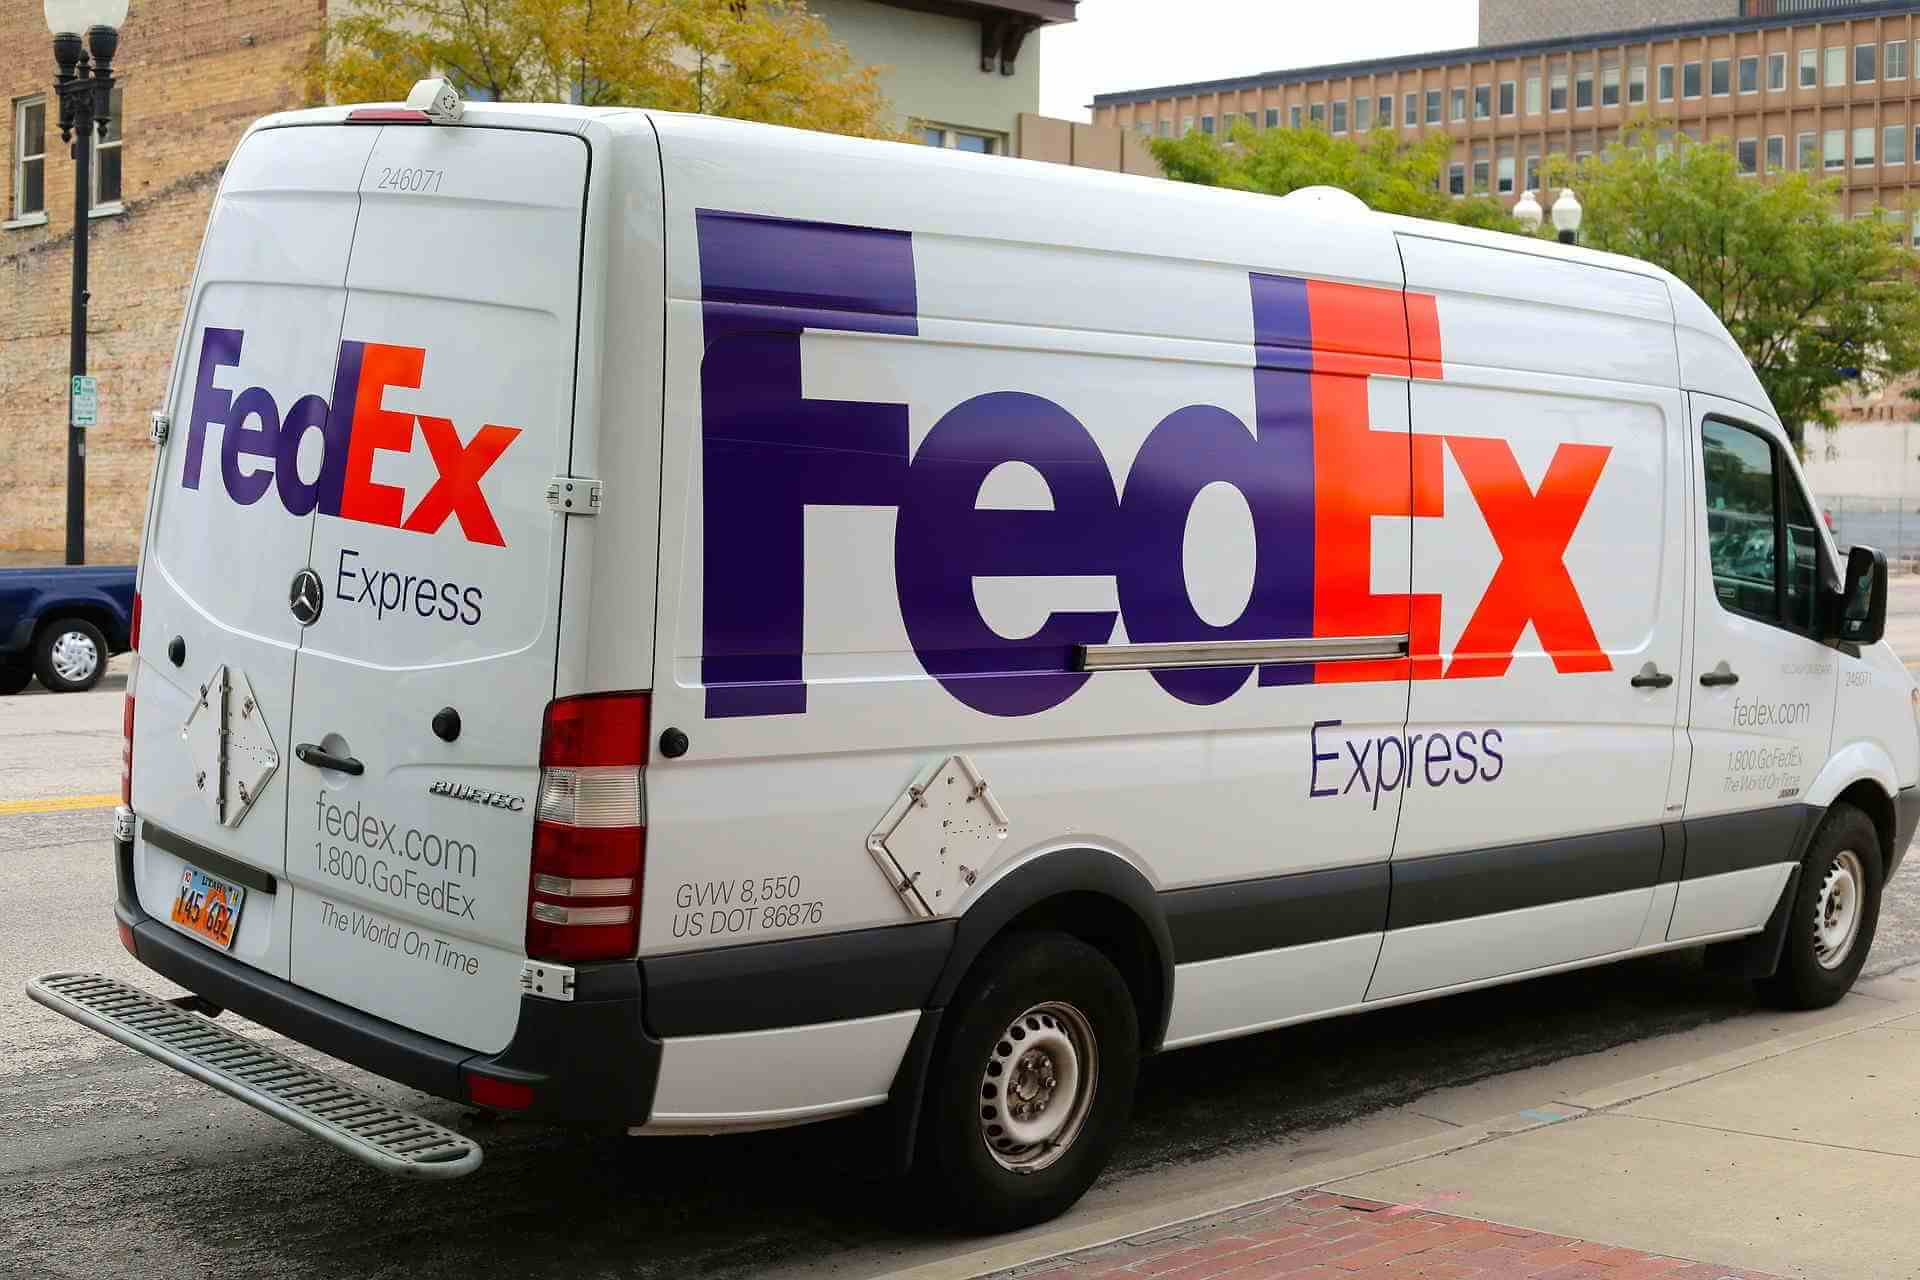 check FedEx claim status